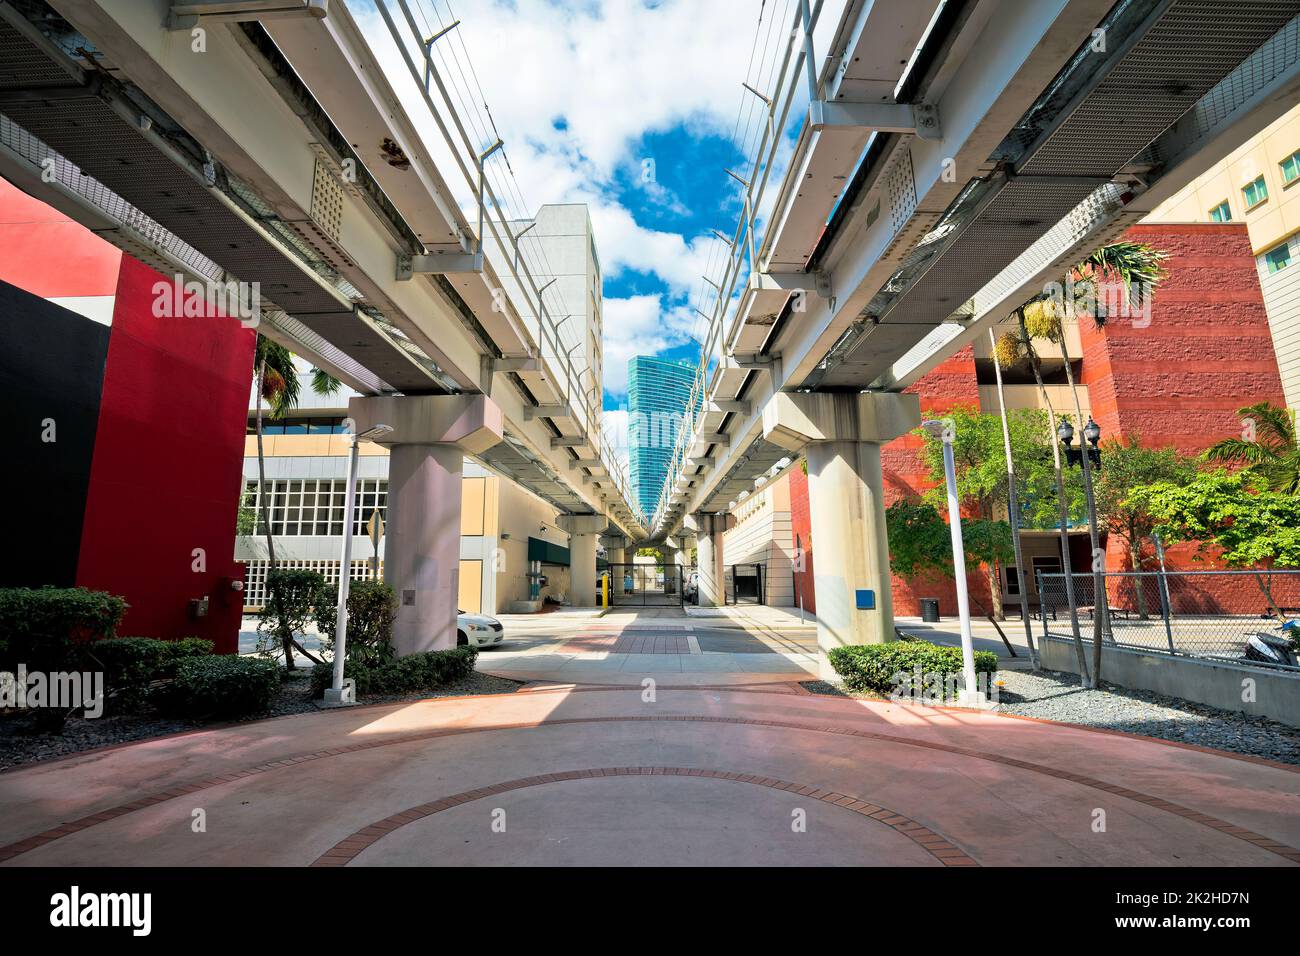 Blick auf die Innenstadt von Miami unter der Rennbahn Stockfoto